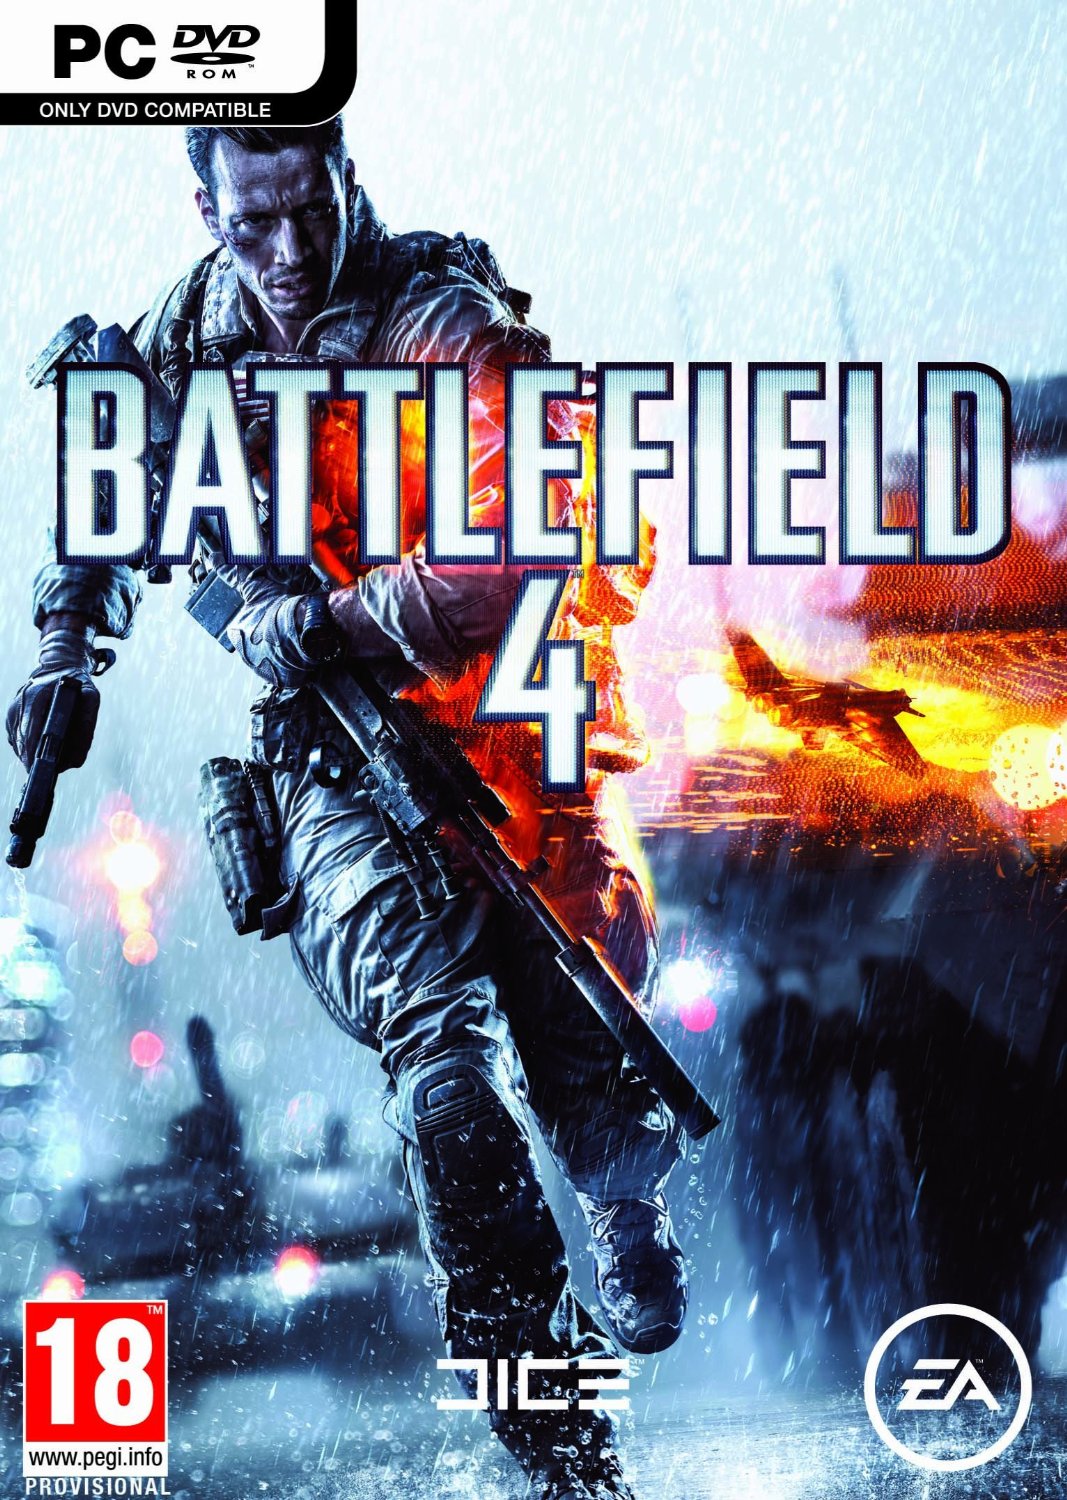 Vidéo-test - Battlefield 4 sur PC